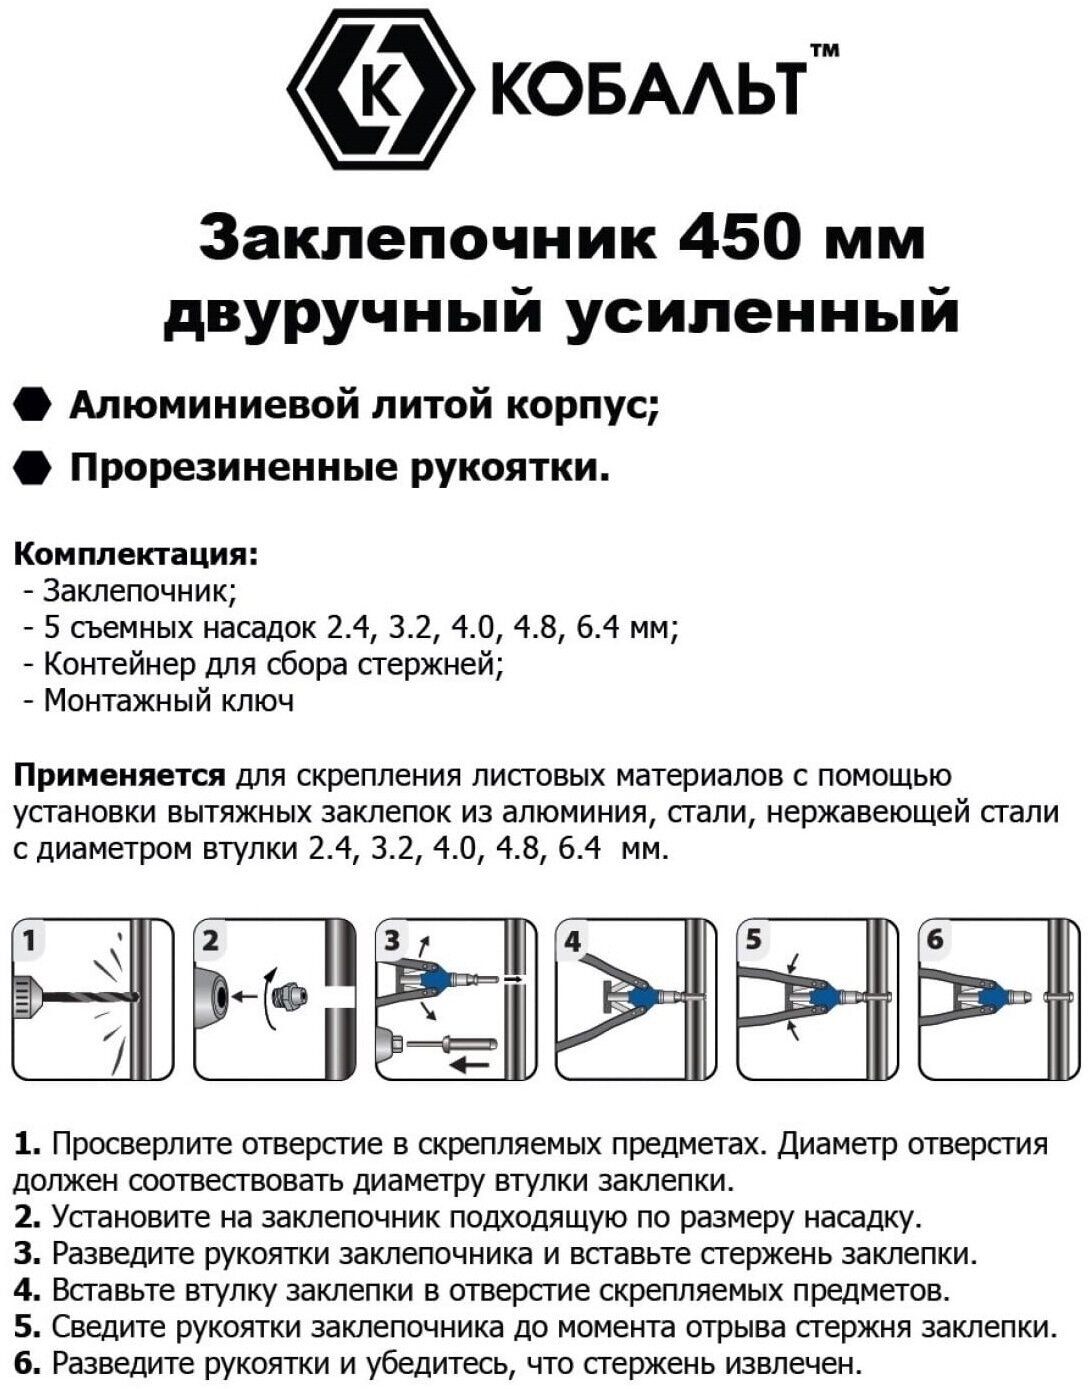 Заклепочник двуручный кобальт 450 мм, заклепки 2,4-3,2-4,0-4,8-6,4 мм, контейнер, блистер